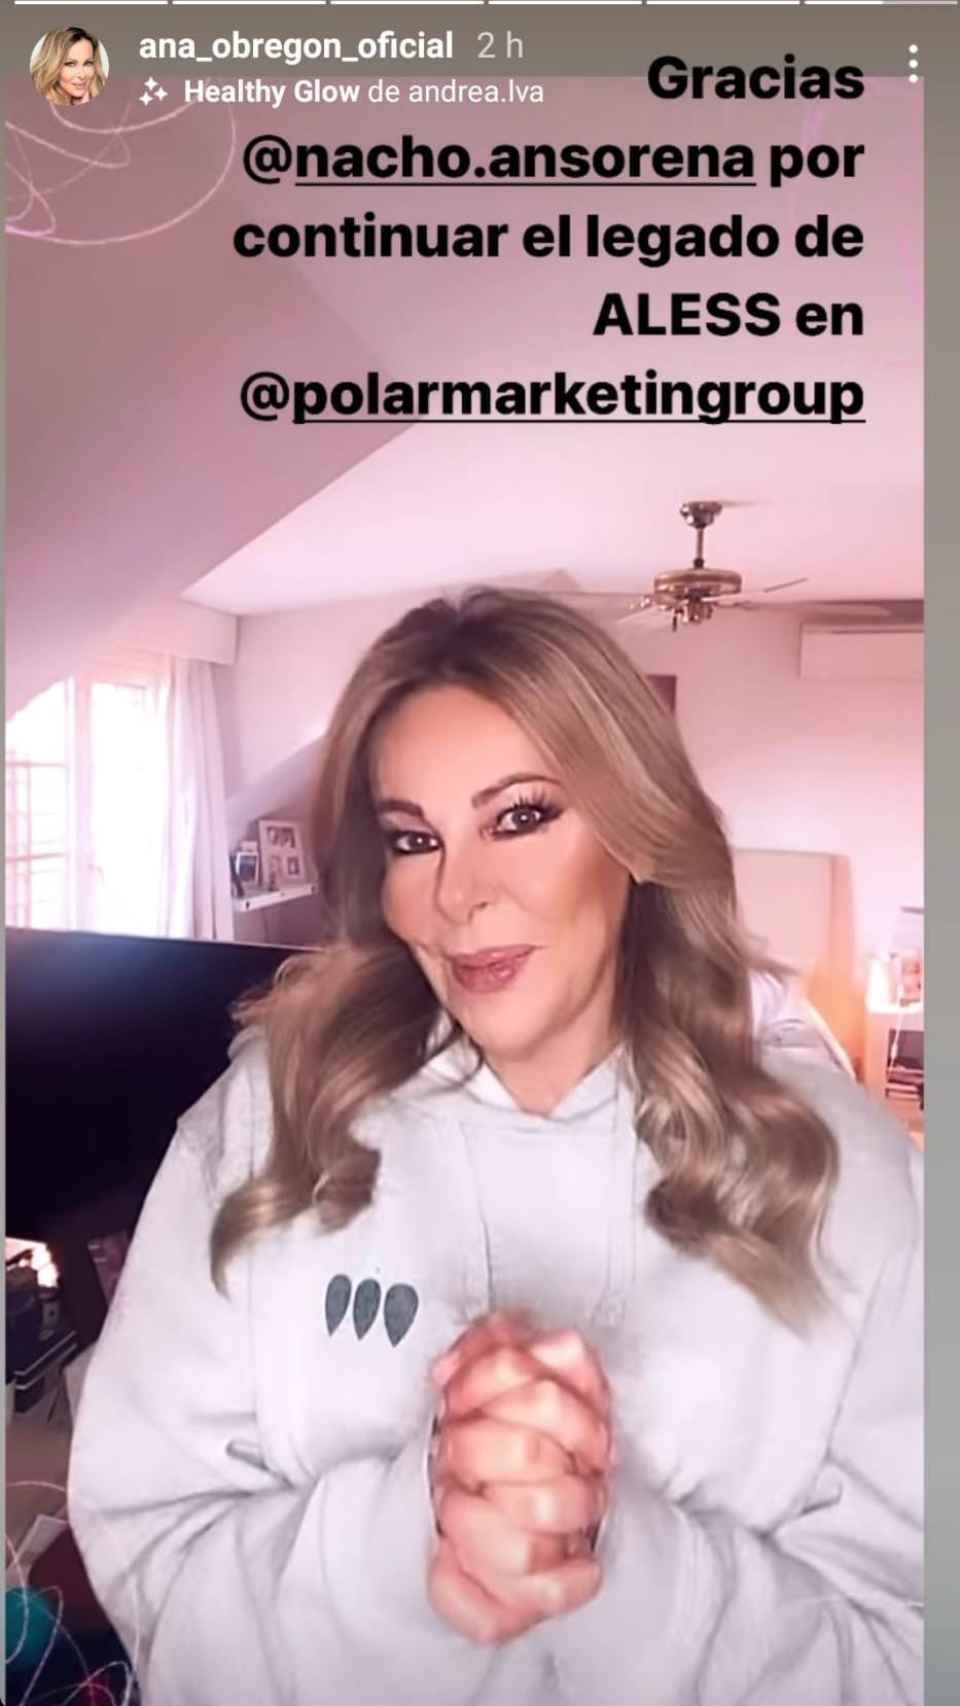 Ana Obregón sigue muy pendiente de la empresa que fundó su hijo, Polar Marketing.